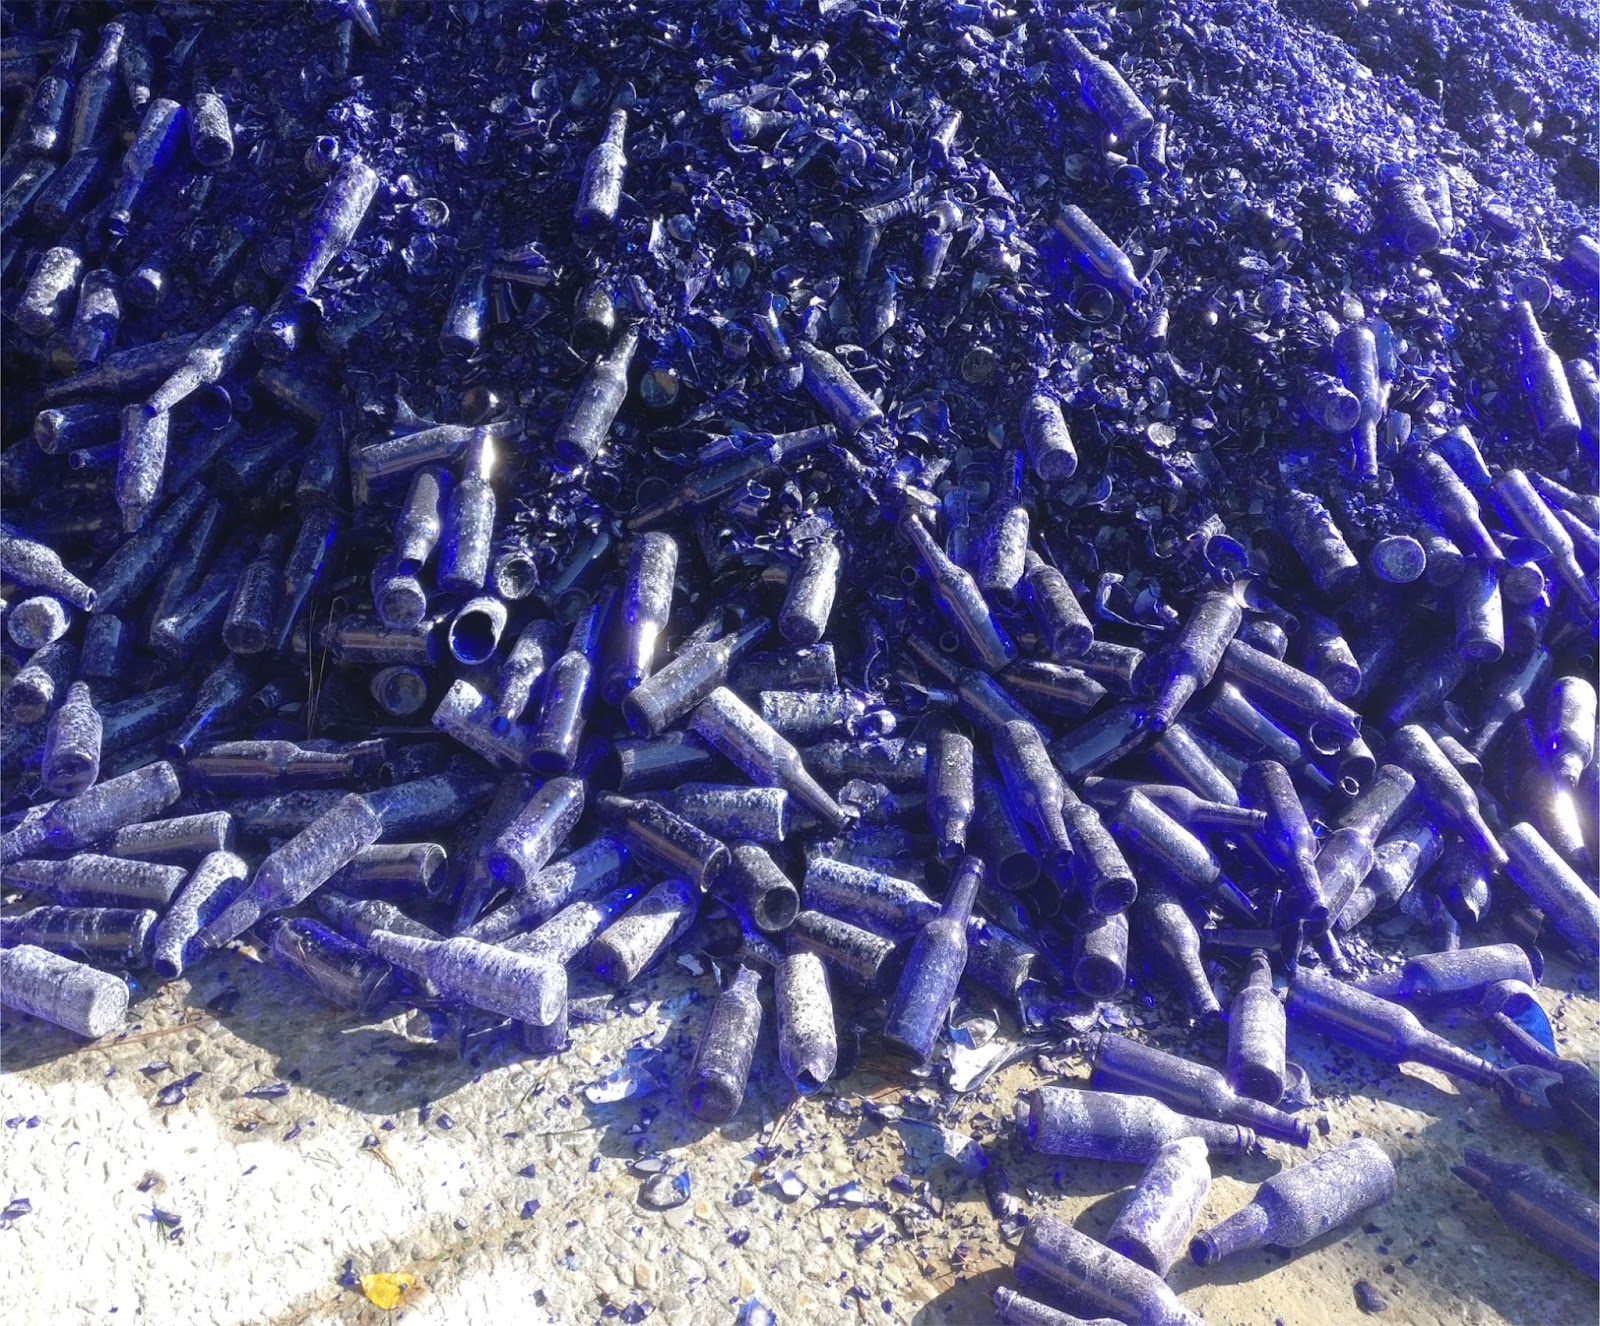 Giant pile of blue glass bottles